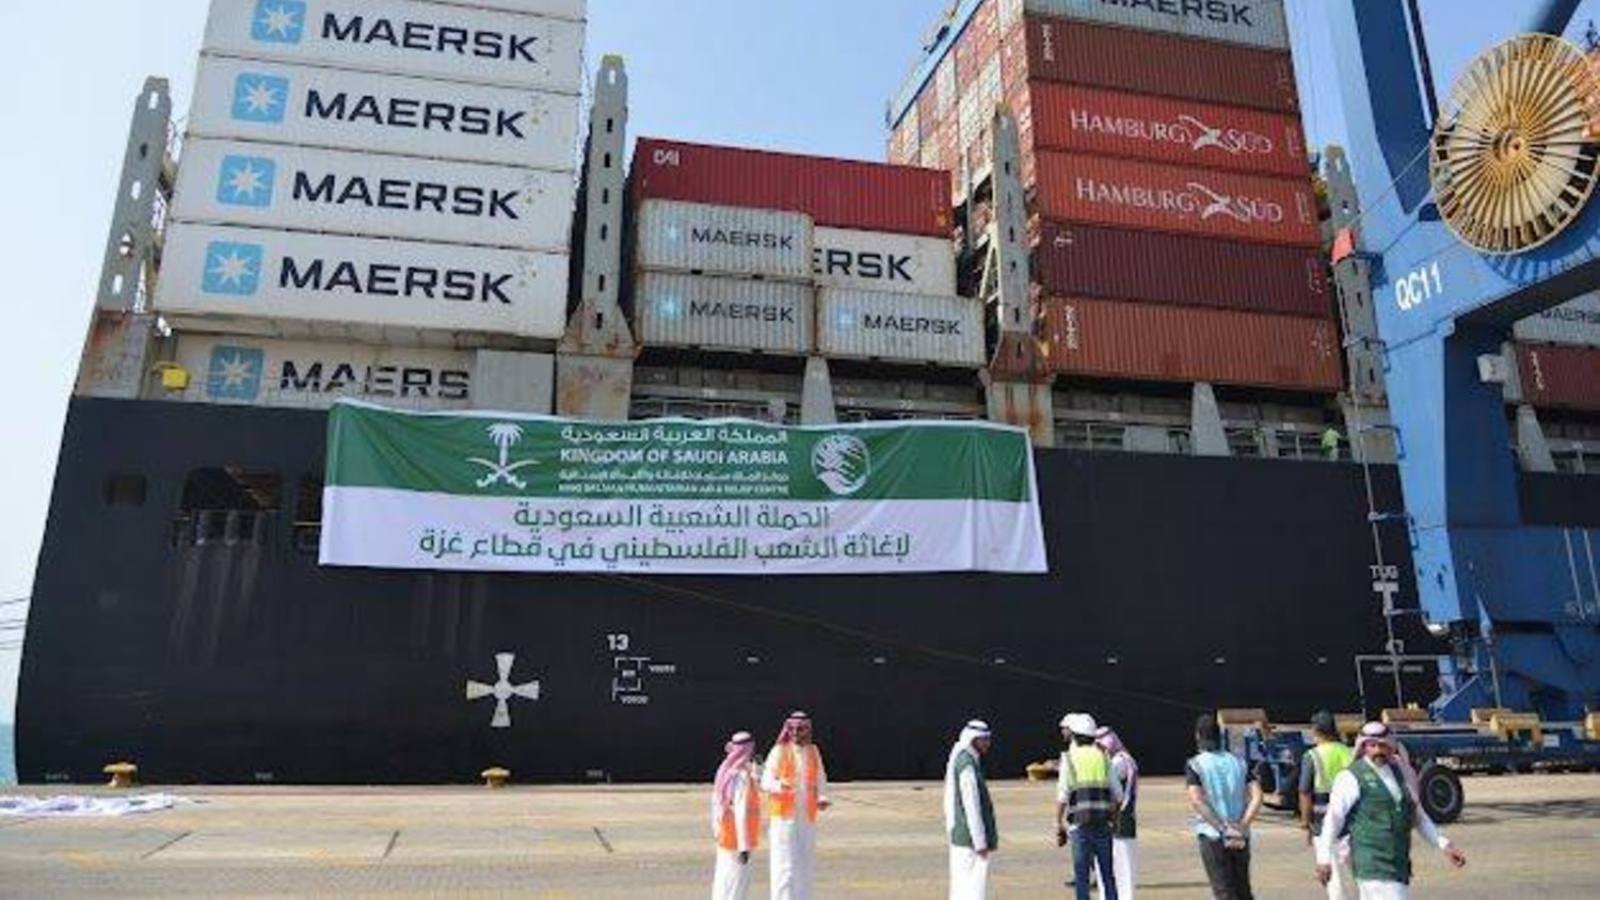  الباخرة الإغاثية غادرت ميناء جدة الإسلامي إلى ميناء بورسعيد بمصر (واس) 